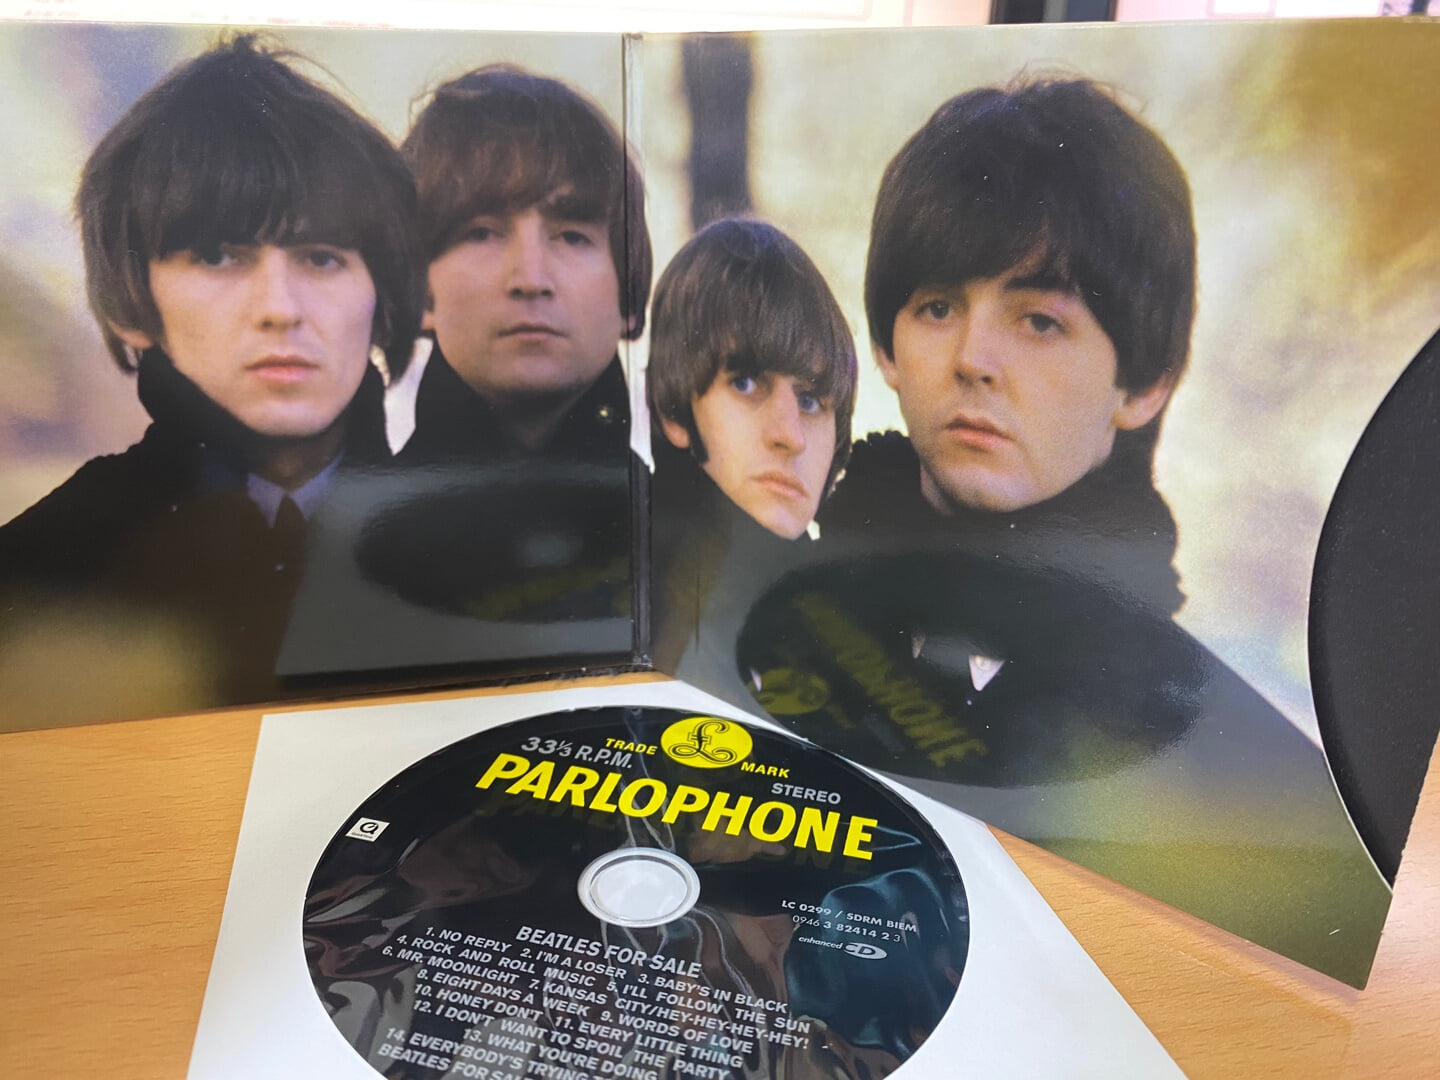 비틀즈 - The Beatles - Beatles For Sale [디지팩] [E.U발매]